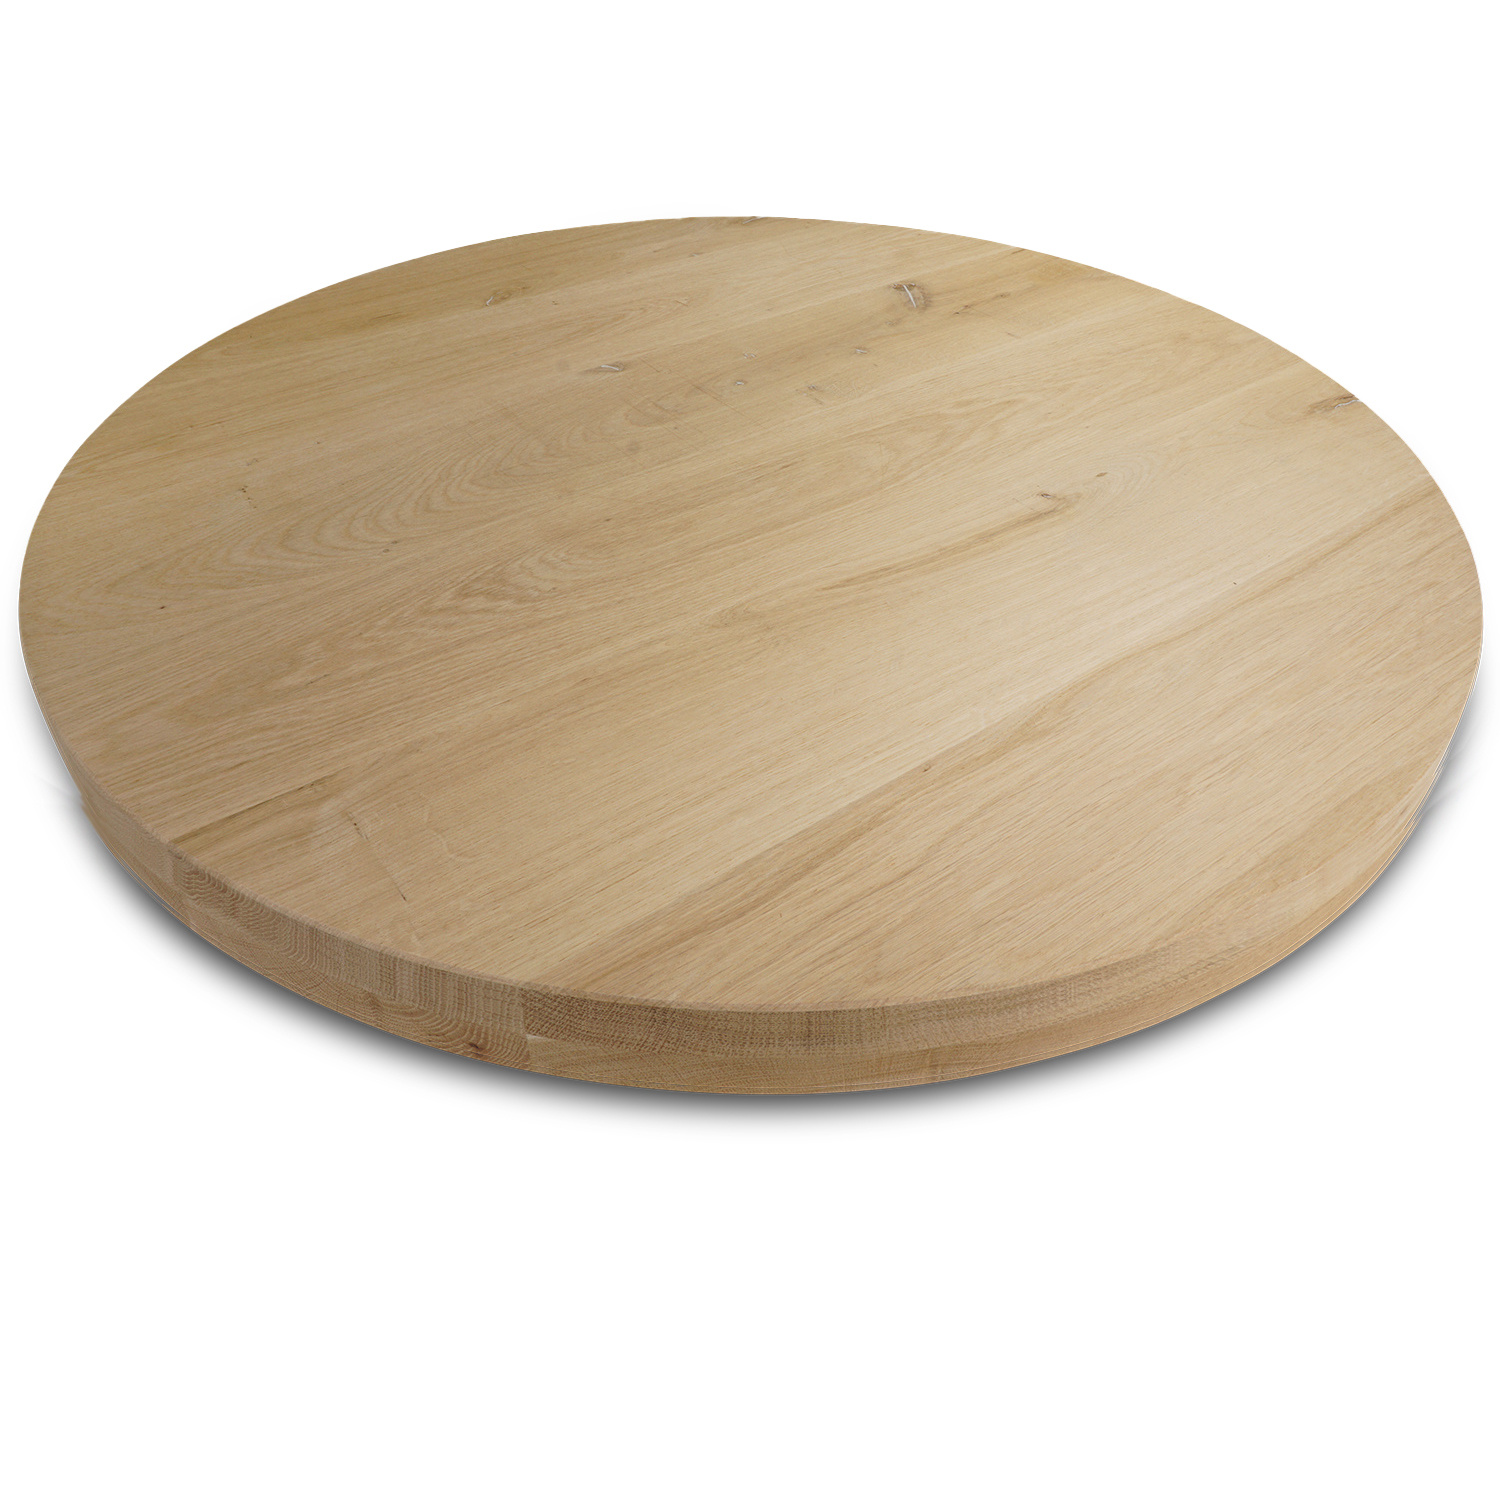  Tischplatte Eiche rund nach Maß - 8 cm dick (2-lagig) - Eichenholz rustikal - Durchmesser: 30 - 180 cm - Eiche Tischplatte rund massiv - verleimt & künstlich getrocknet (HF 8-12%)